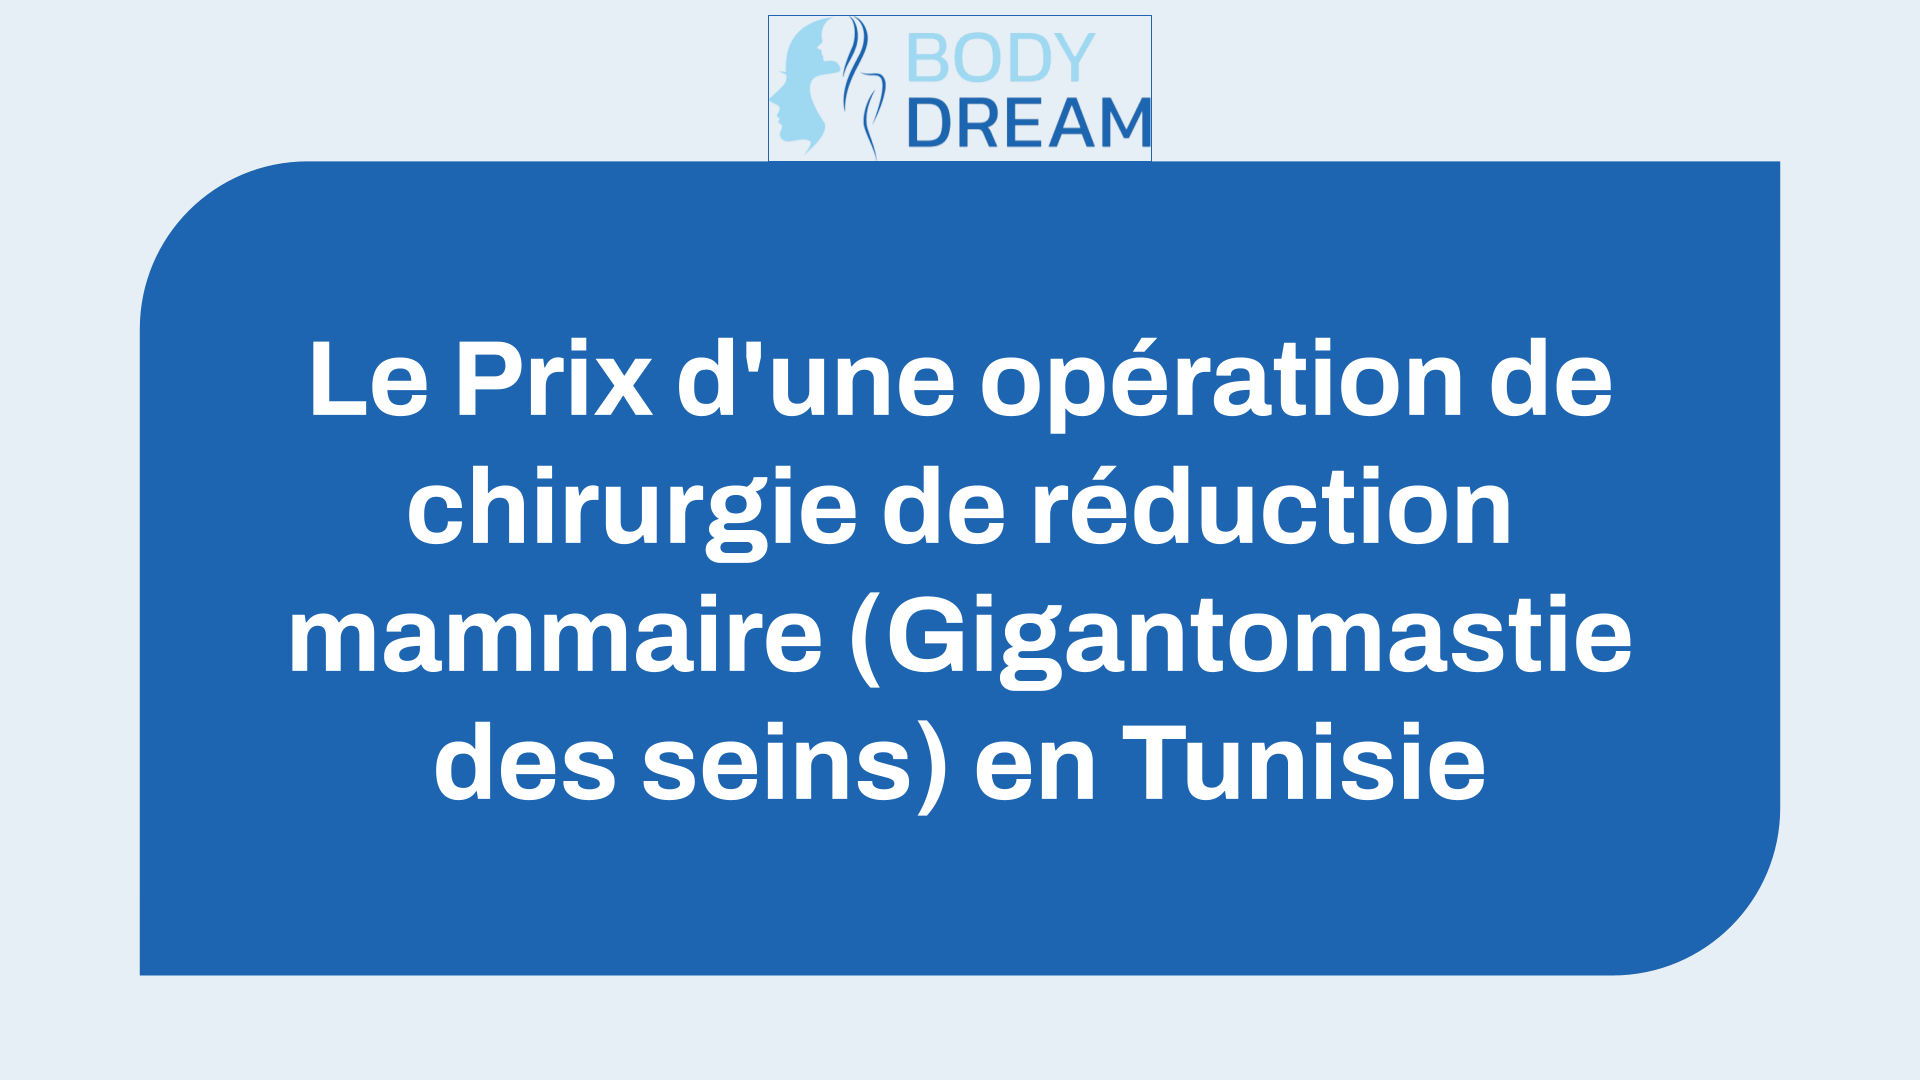 Le Prix d'une opération de chirurgie de réduction mammaire (Gigantomastie des seins) en Tunisie (le Tarif de l'intervention).